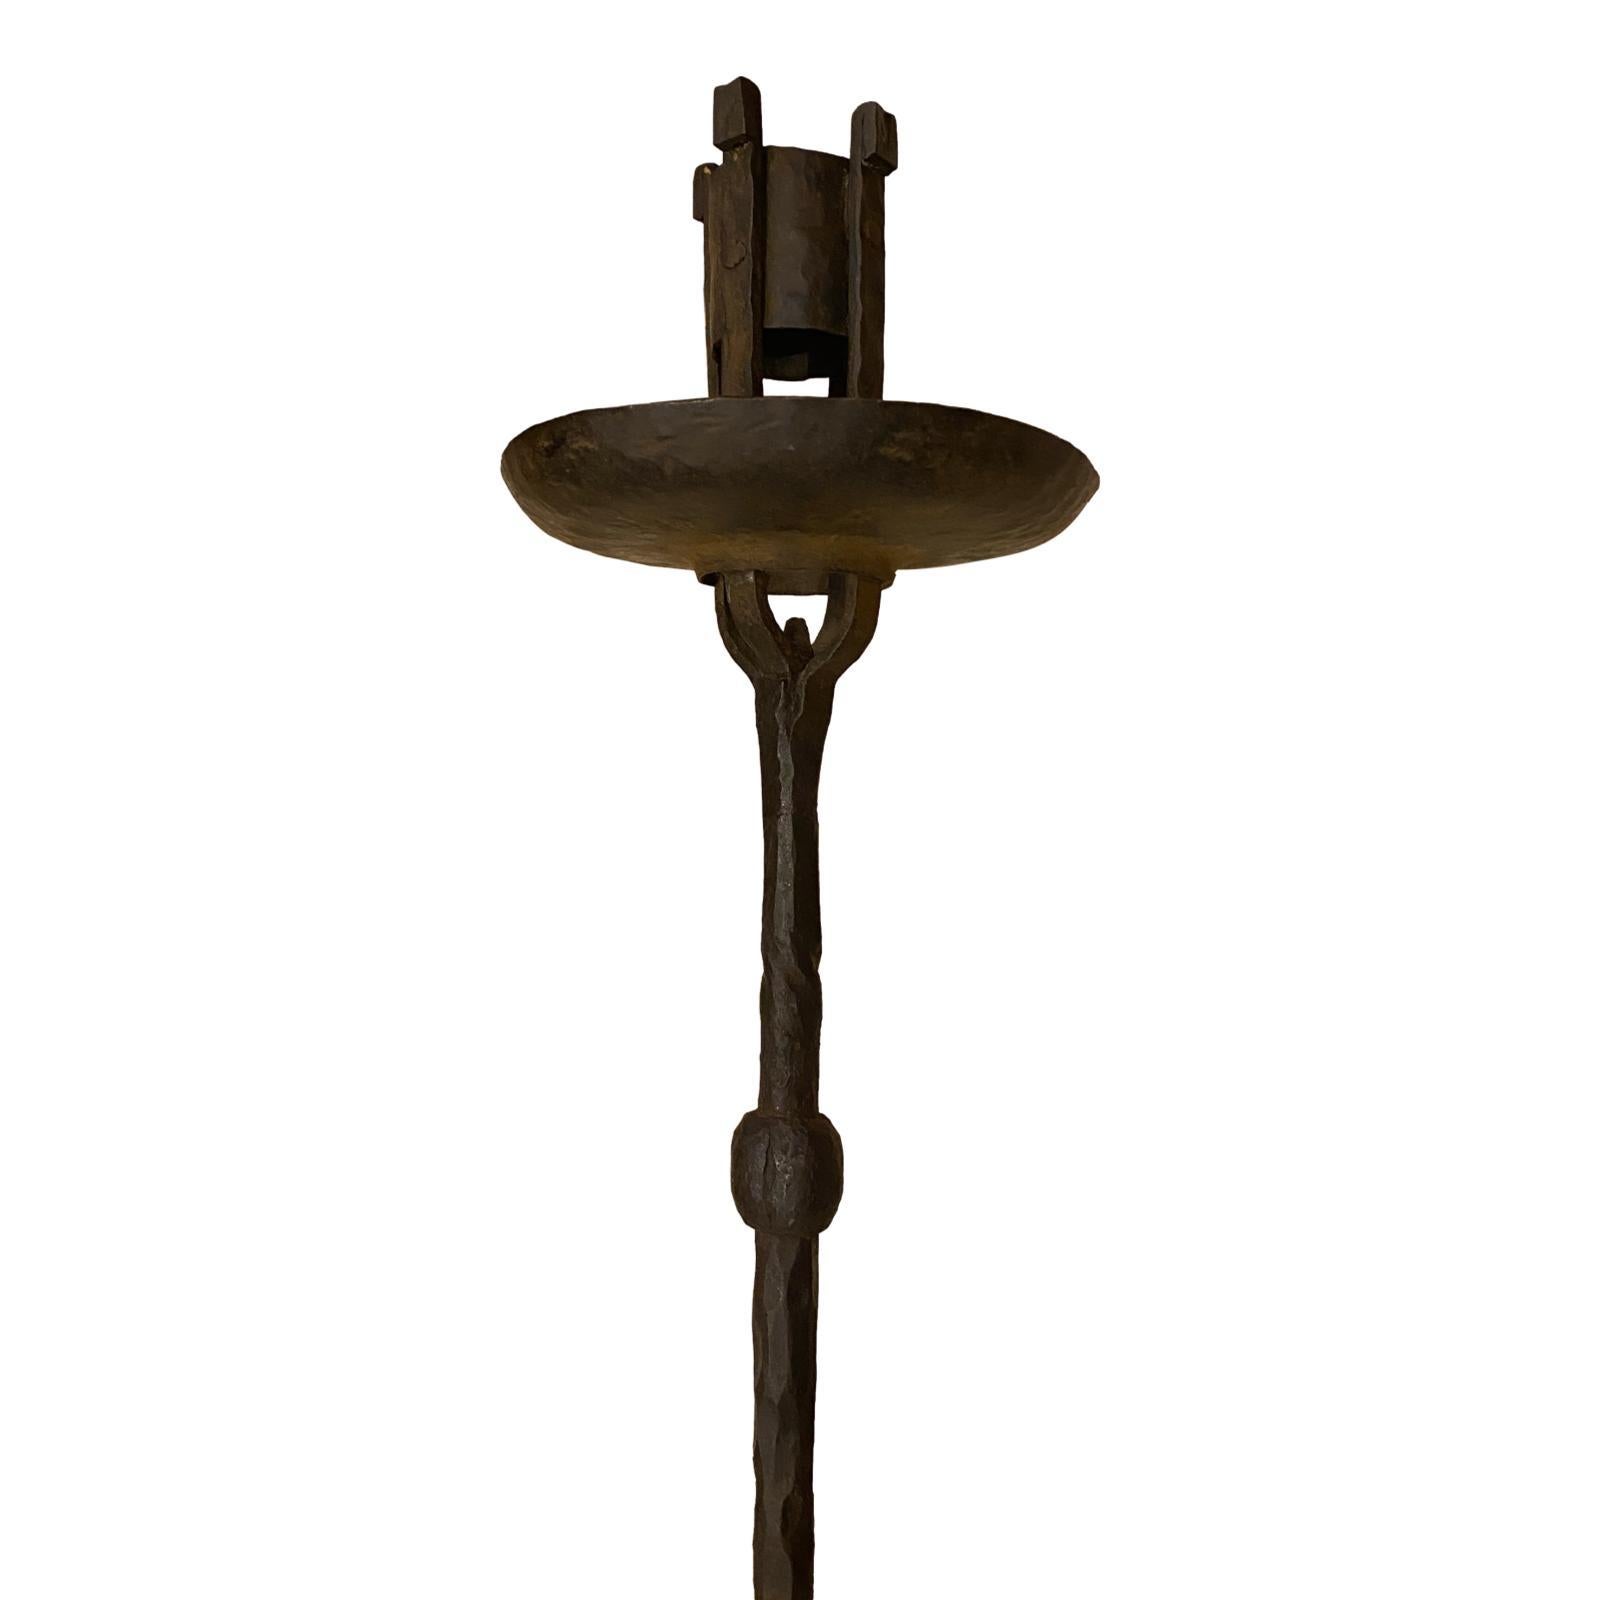 Lampadaire tripode en fer forgé anglais datant de 1900. Peut être électrifié.

Mesures :
Hauteur : 52